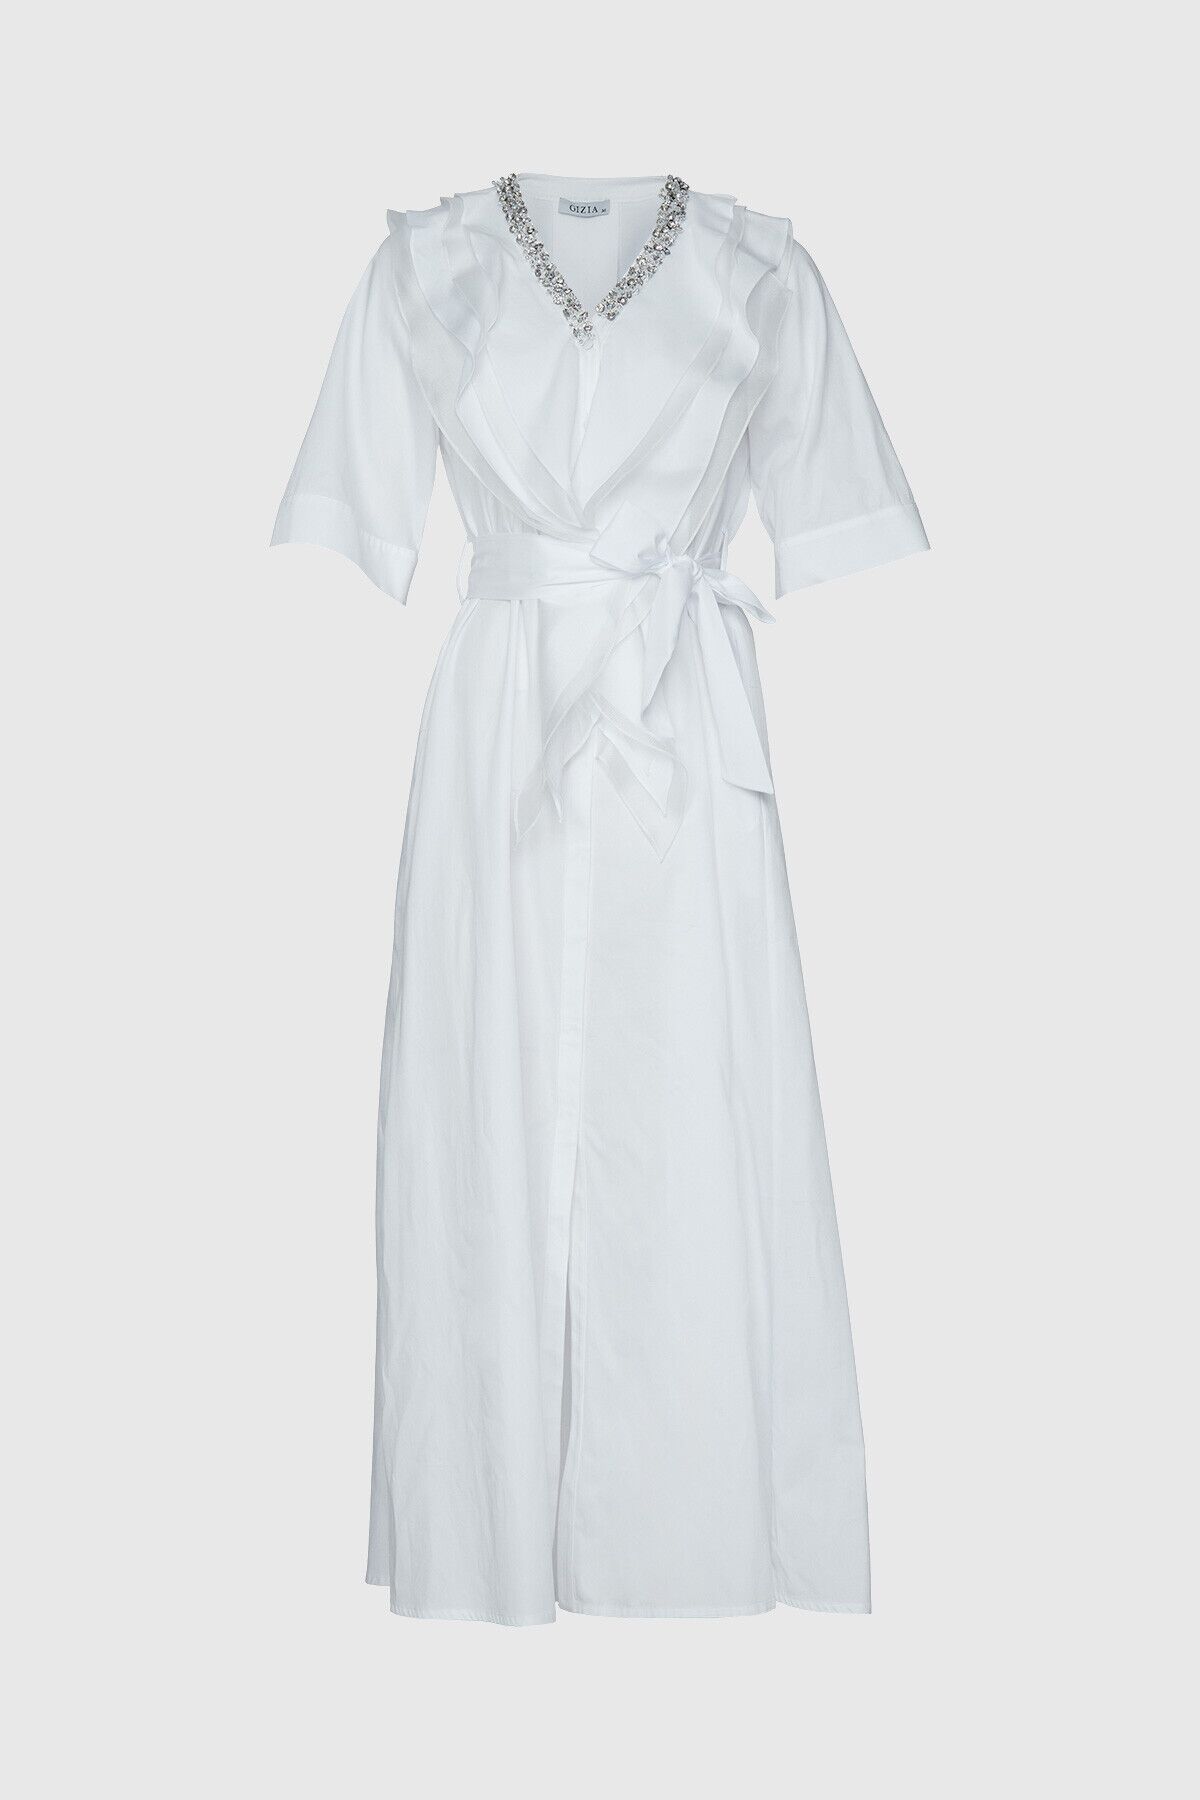 GIZIA - Stone And Waist Sash Tie Detailed Long White Dress